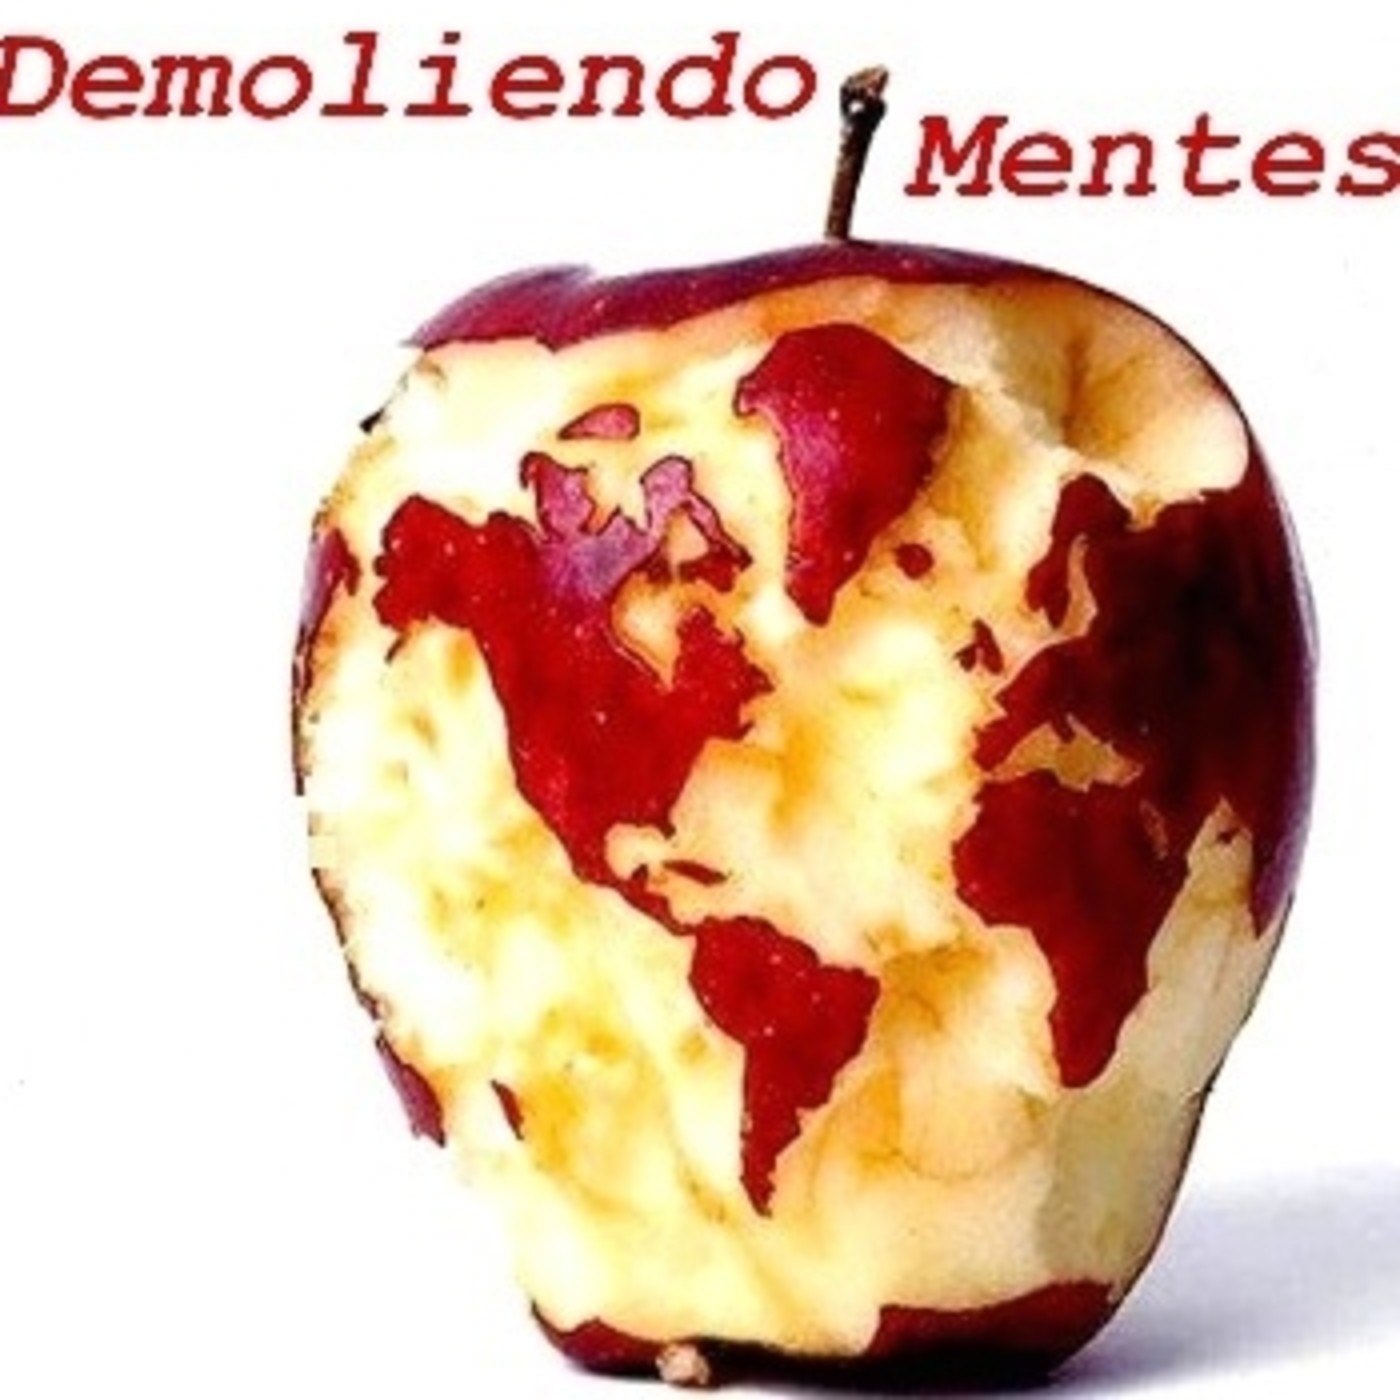 Demoliendo Mentes - Sentipensares Radio